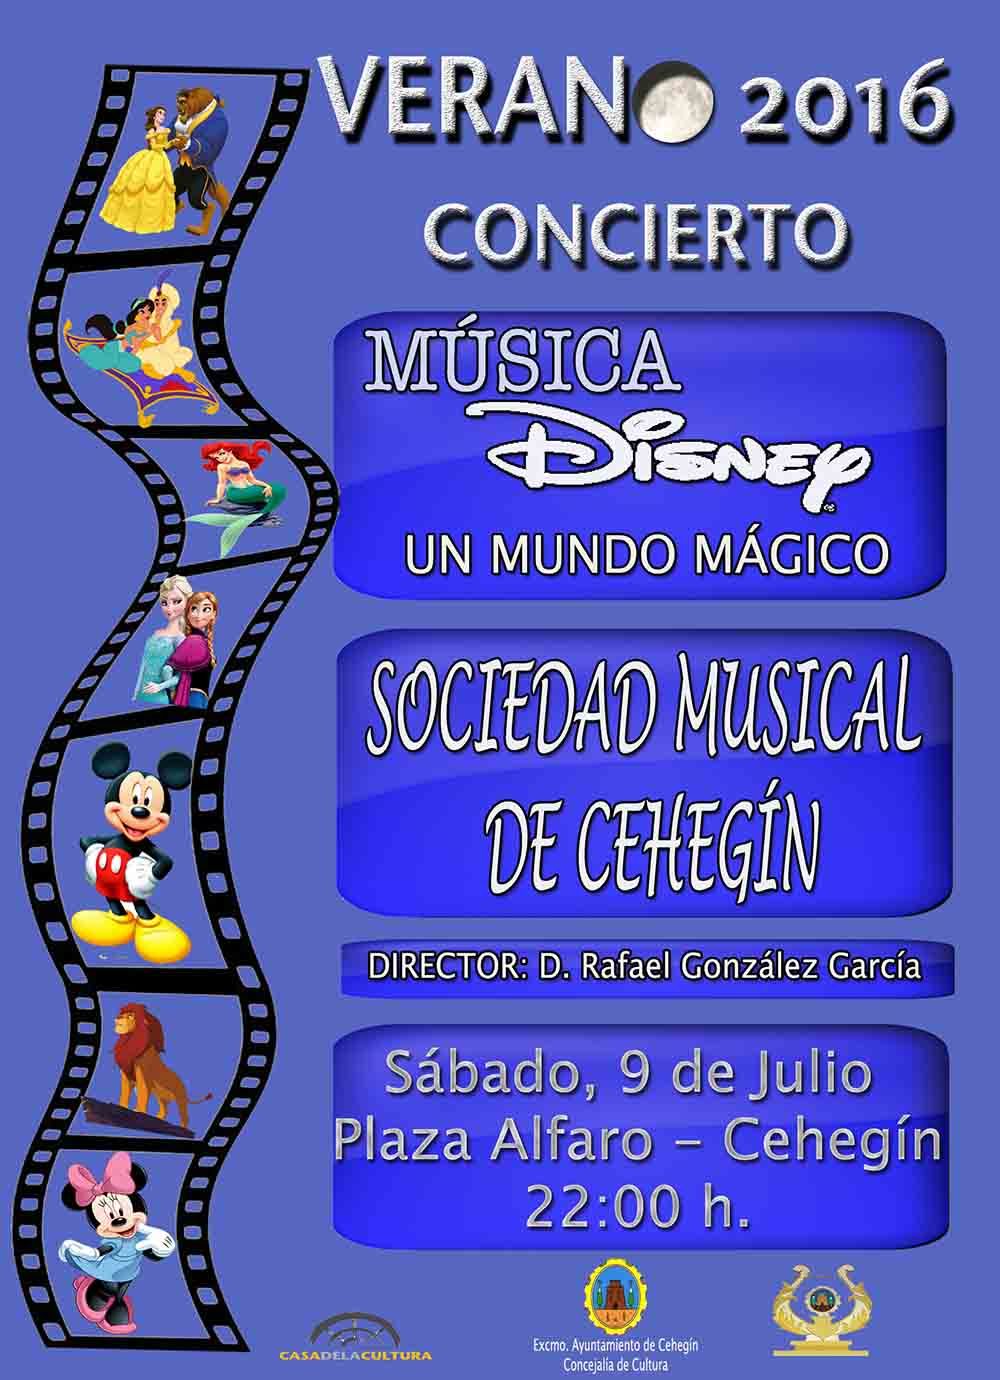 La sociedad musical de Cehegín ofrecerá un concierto sobre la música de Disney el sábado 9